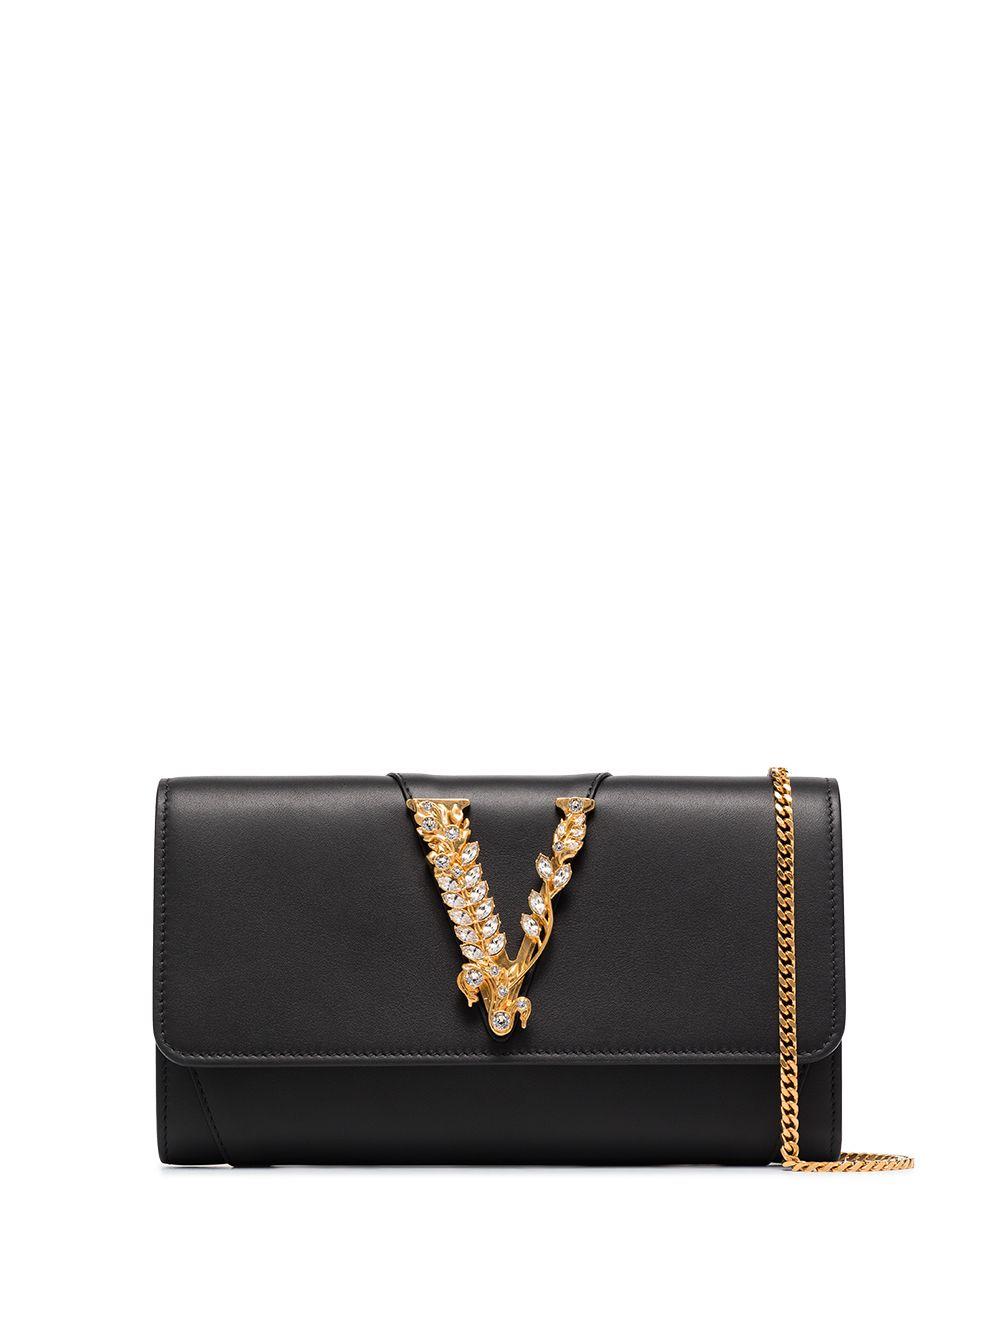 Versace Virtus Crystal Embellished Clutch Bag in Black